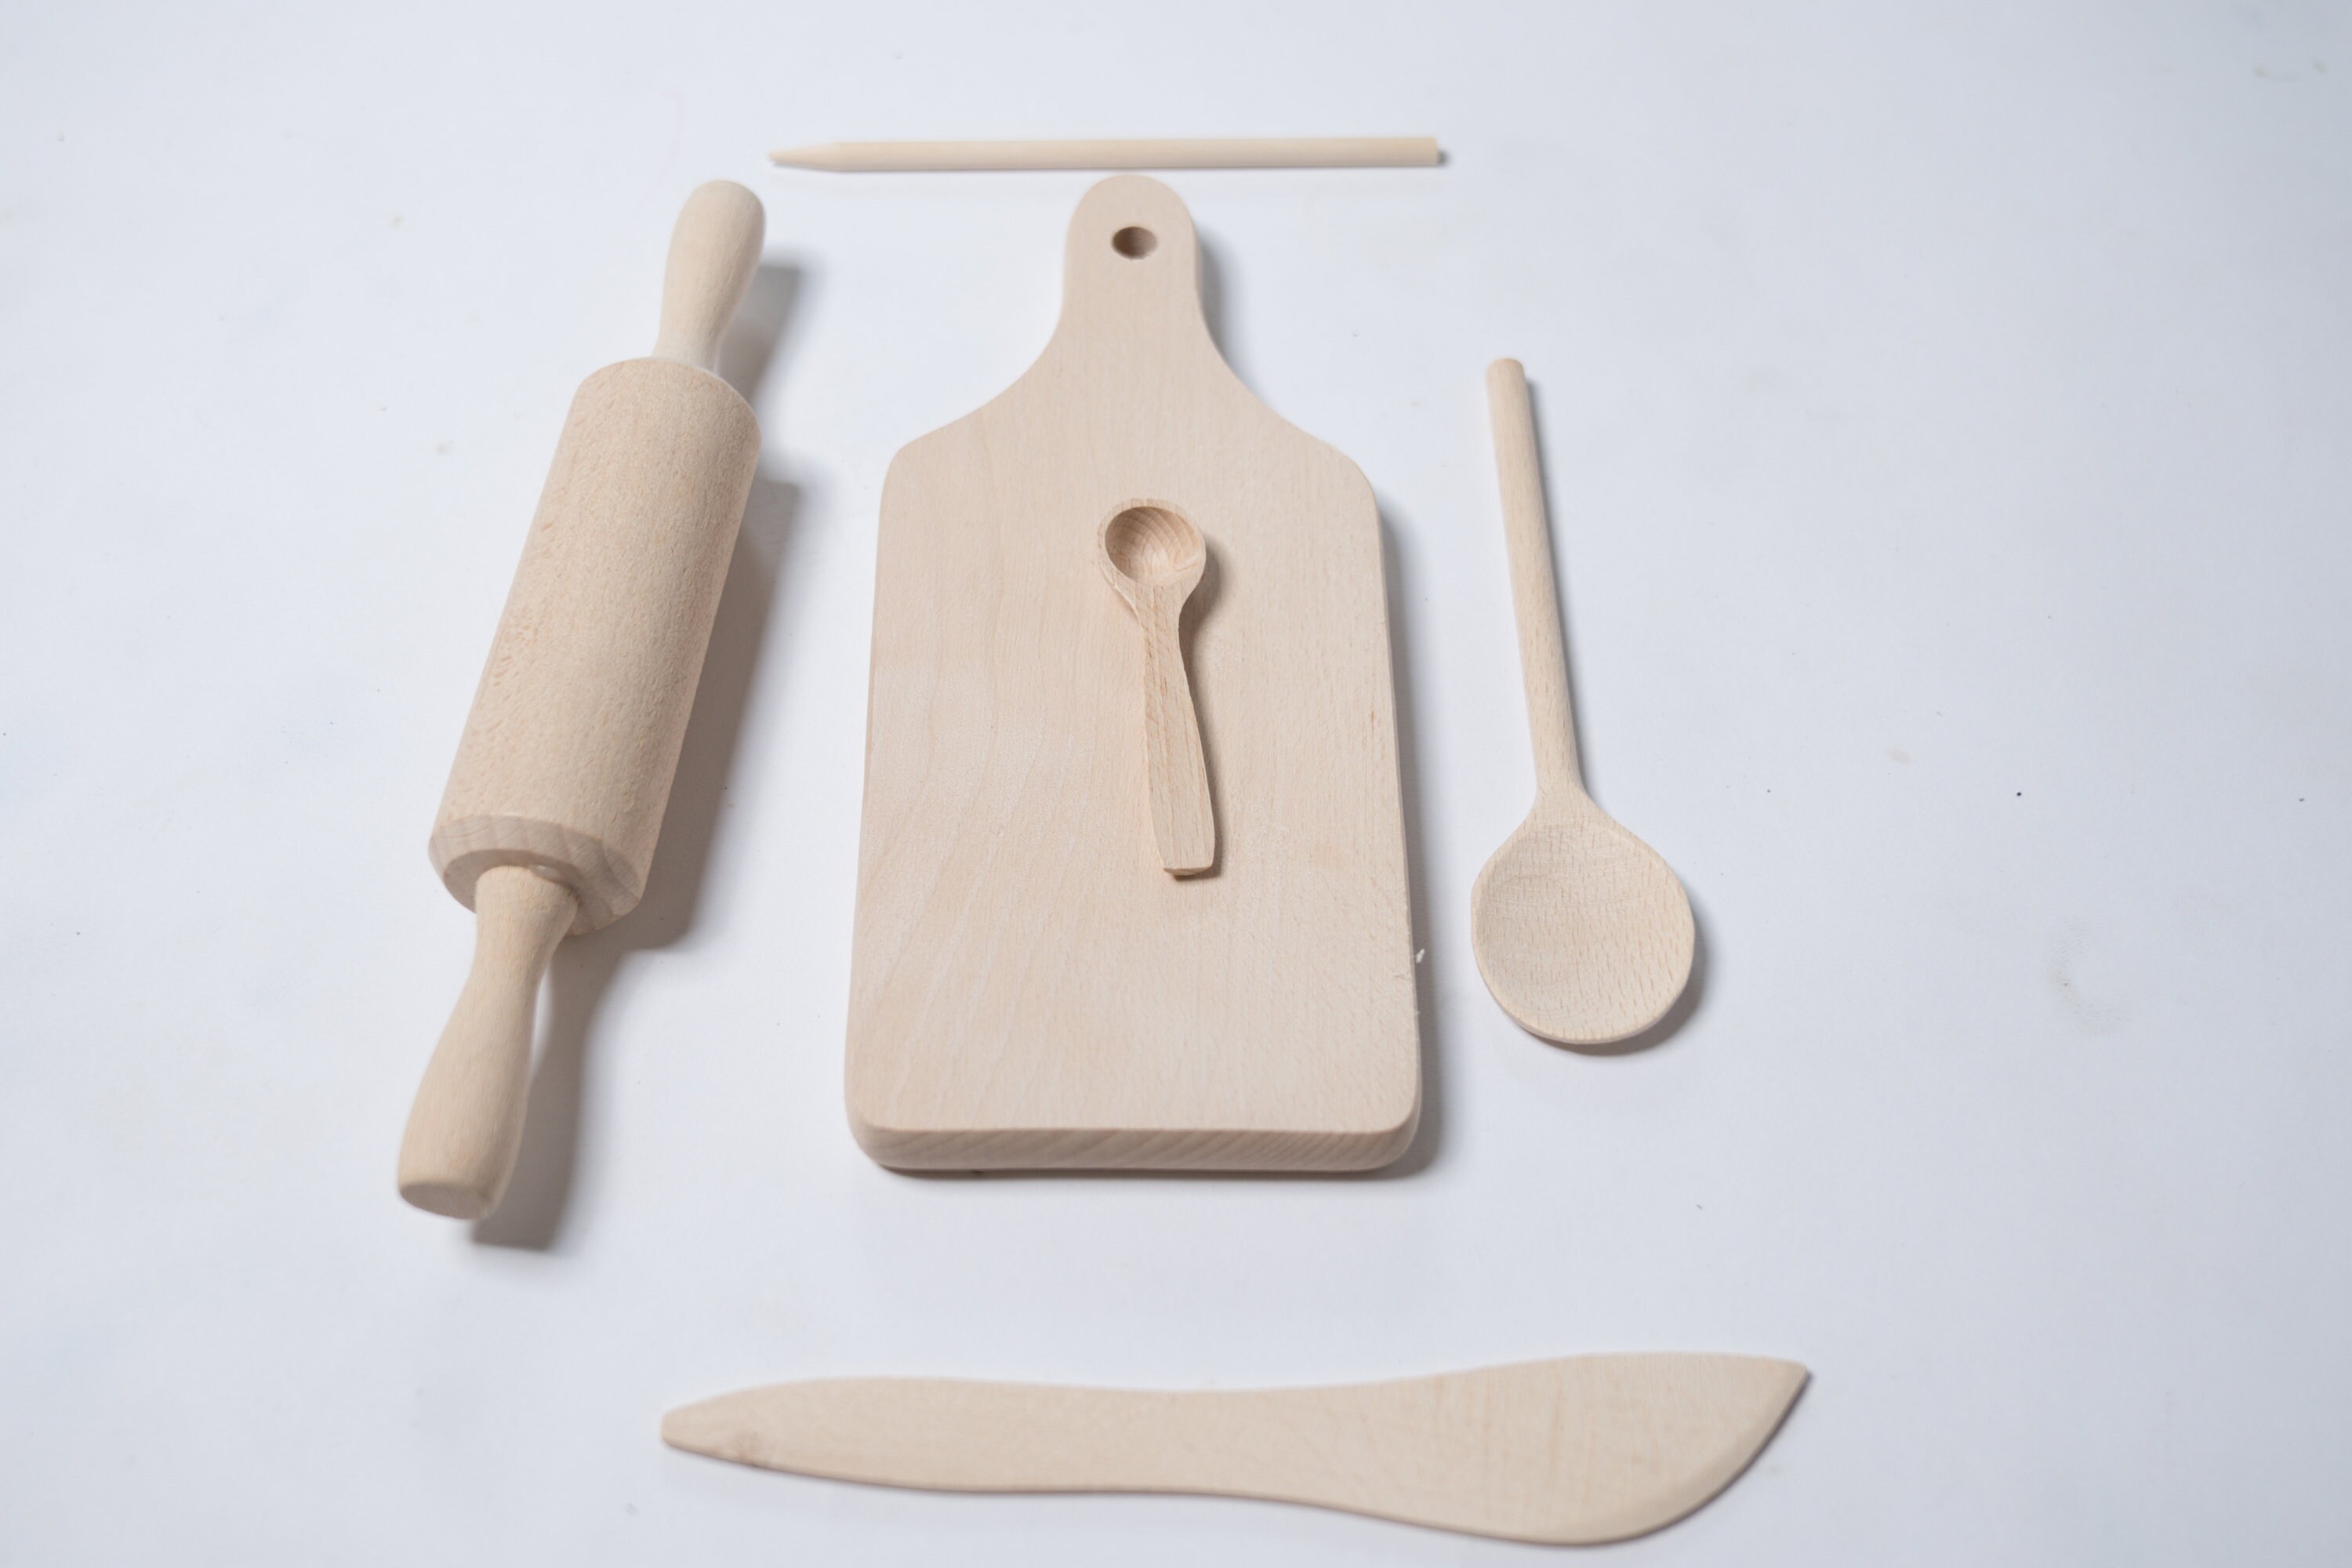 Buy Animal Design Toy Wooden Kitchen Utensils - 6 Pieces Online